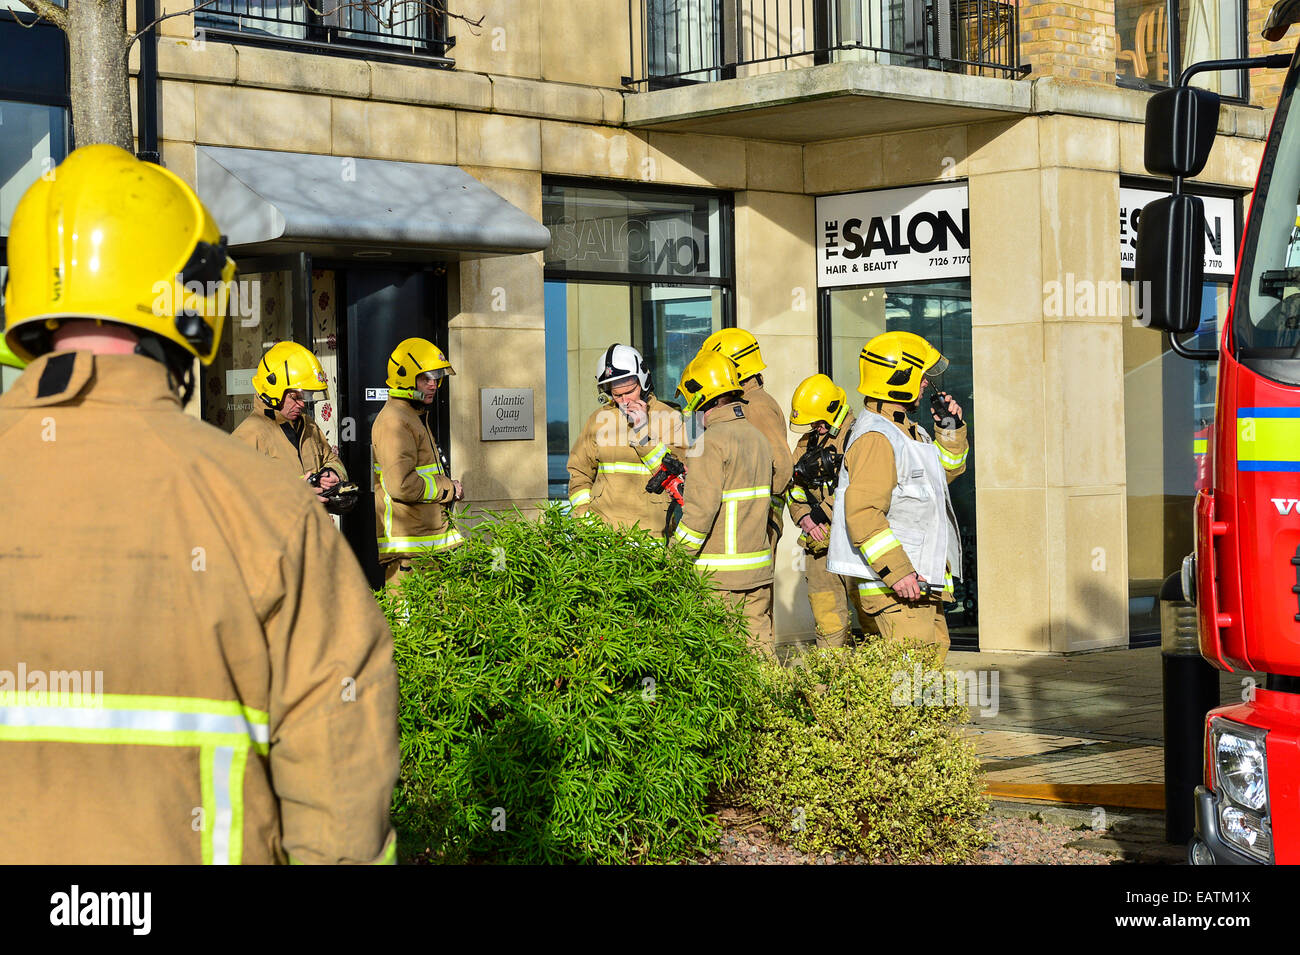 Stock Photo - Les pompiers sur les lieux d'un incident survenu à l'immeuble. Photo : George Sweeney/Alamy Banque D'Images